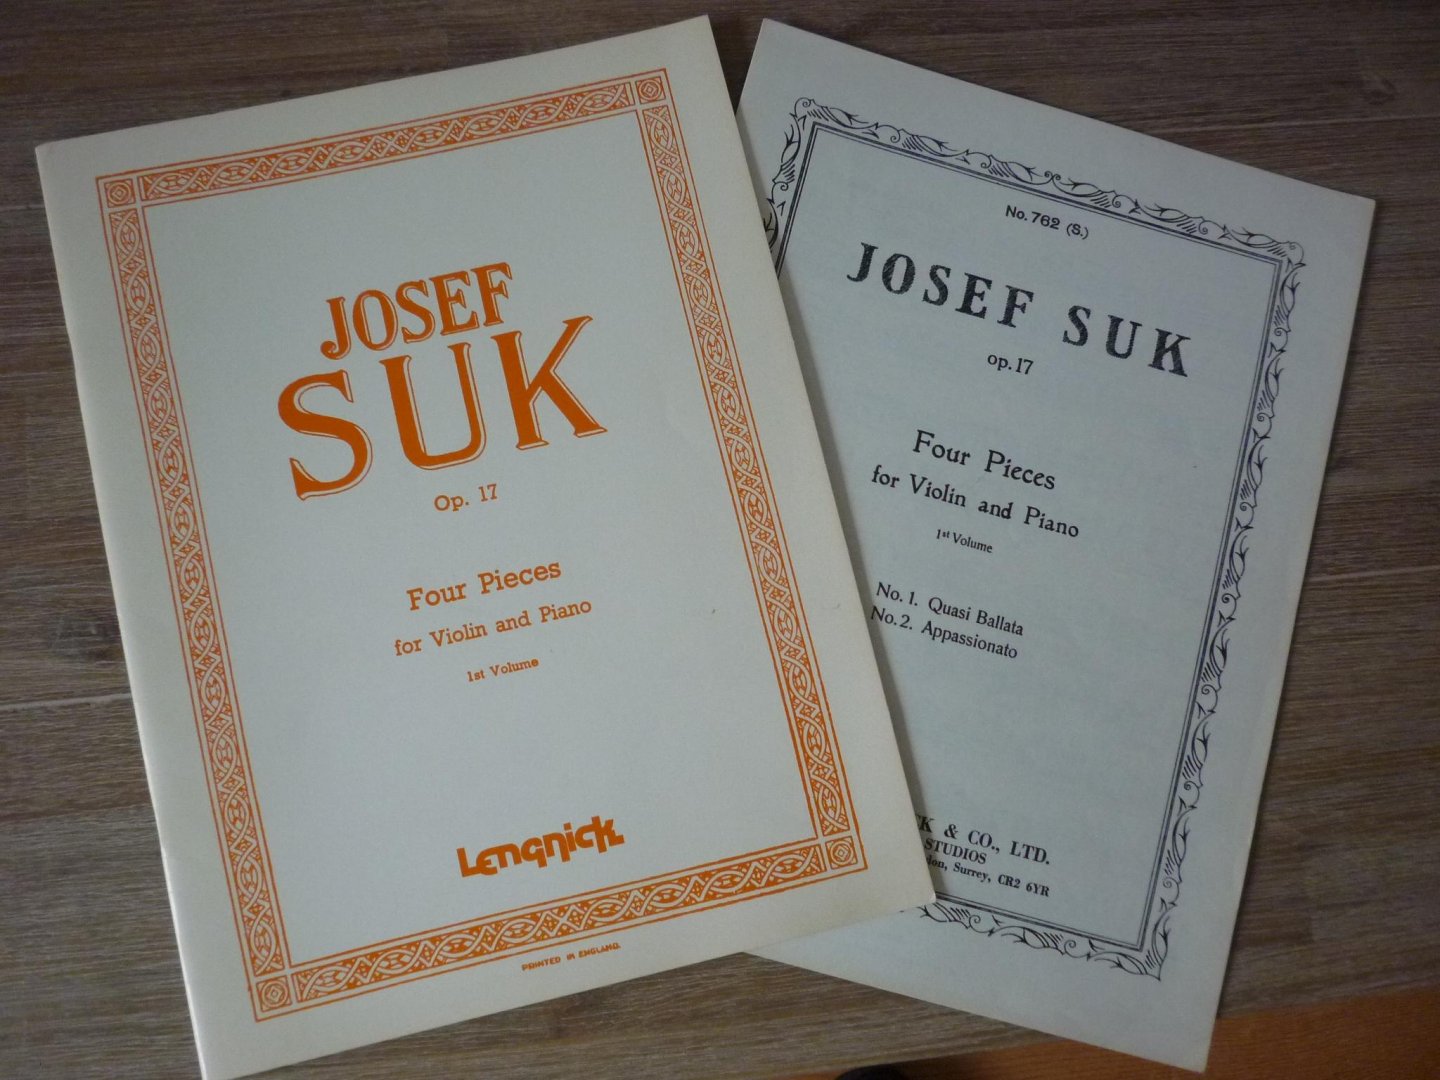 Suk; Josef - Four pieces for violin and piano. Op. 17 - 1st volume; (No. 1: Qasi Ballata + No 2: Appassionato)